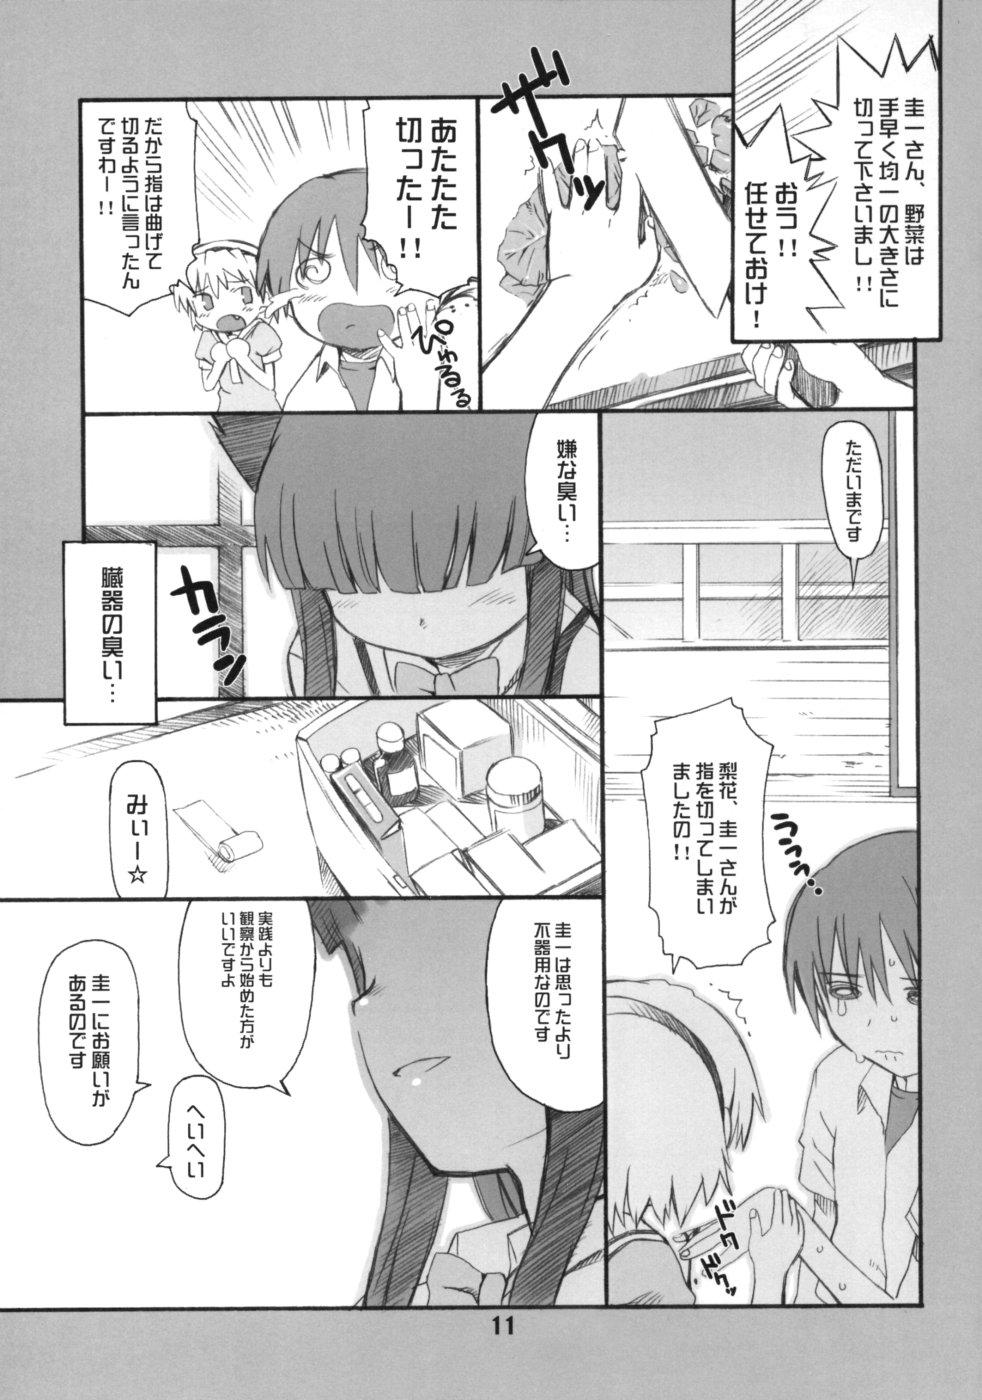 Trans Douka Nagekanaide - Higurashi no naku koro ni Trans - Page 10